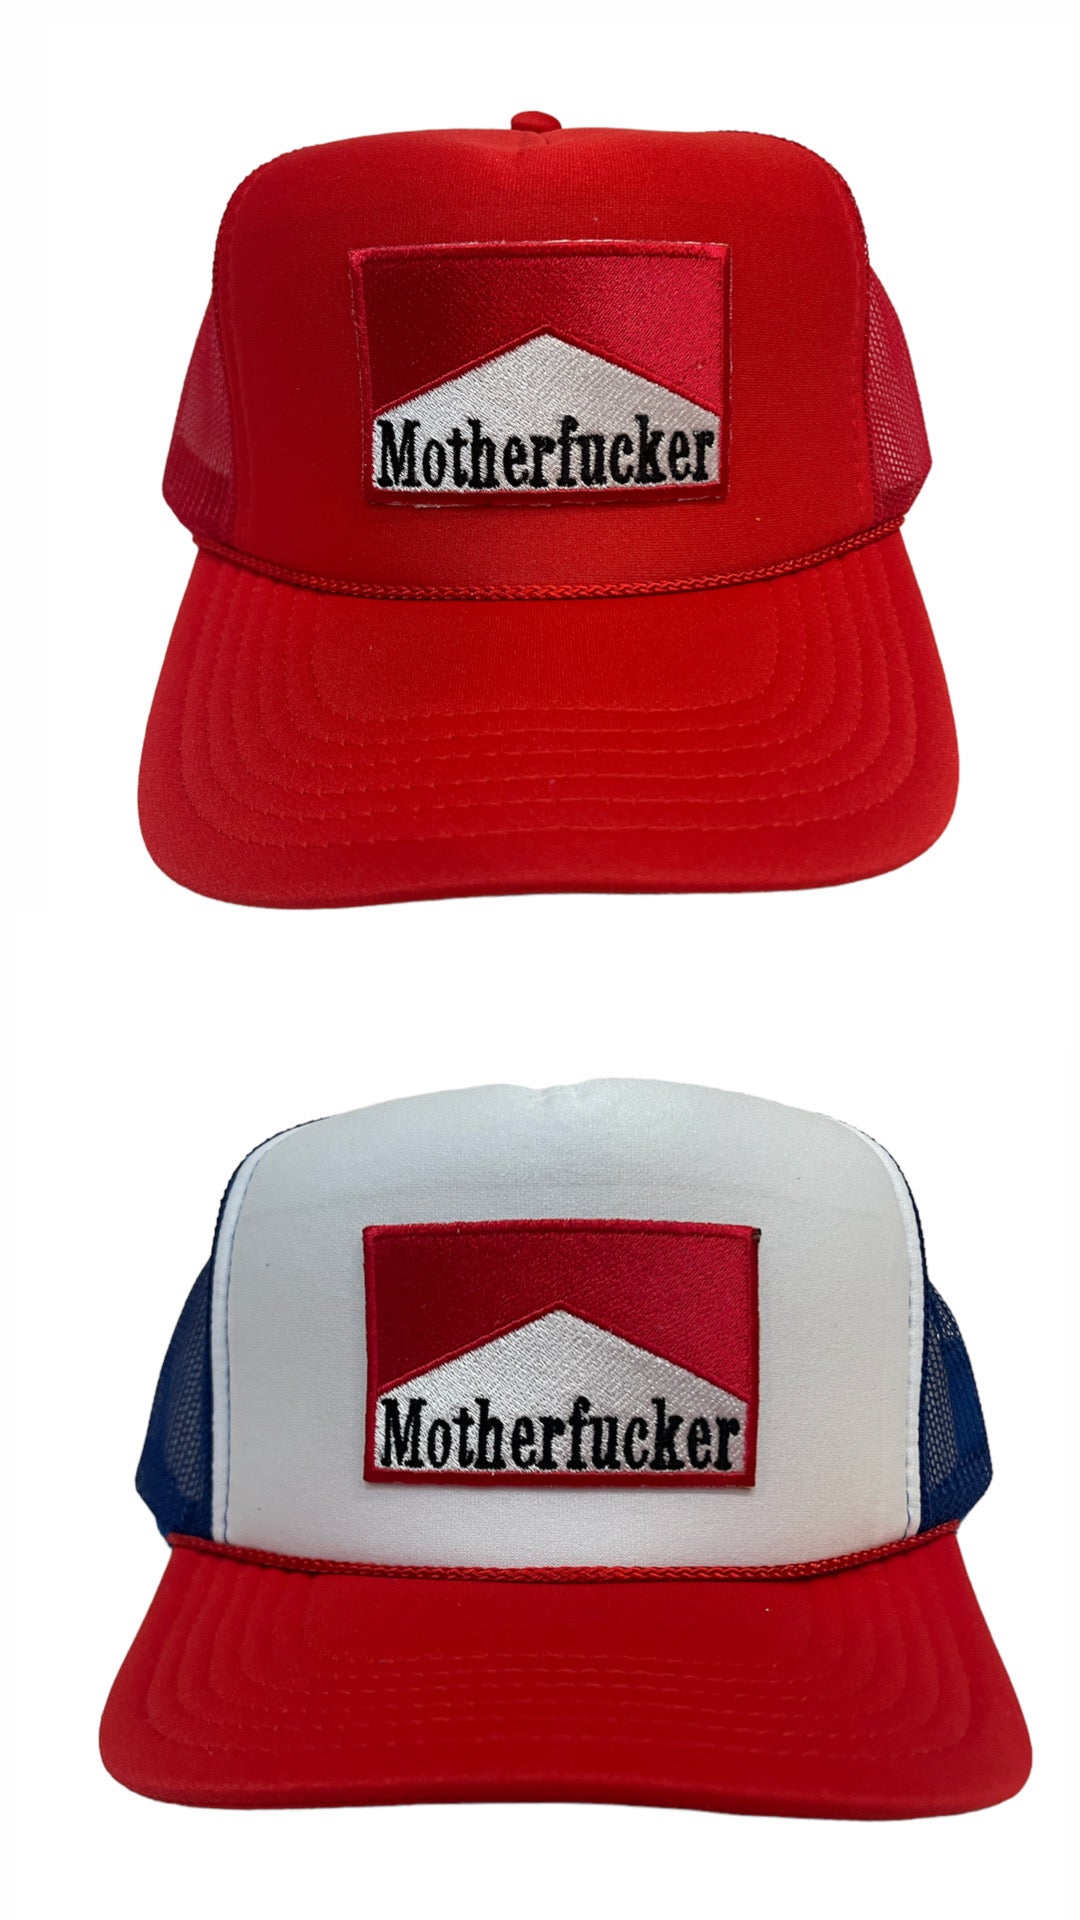 MotherTrucker Hat